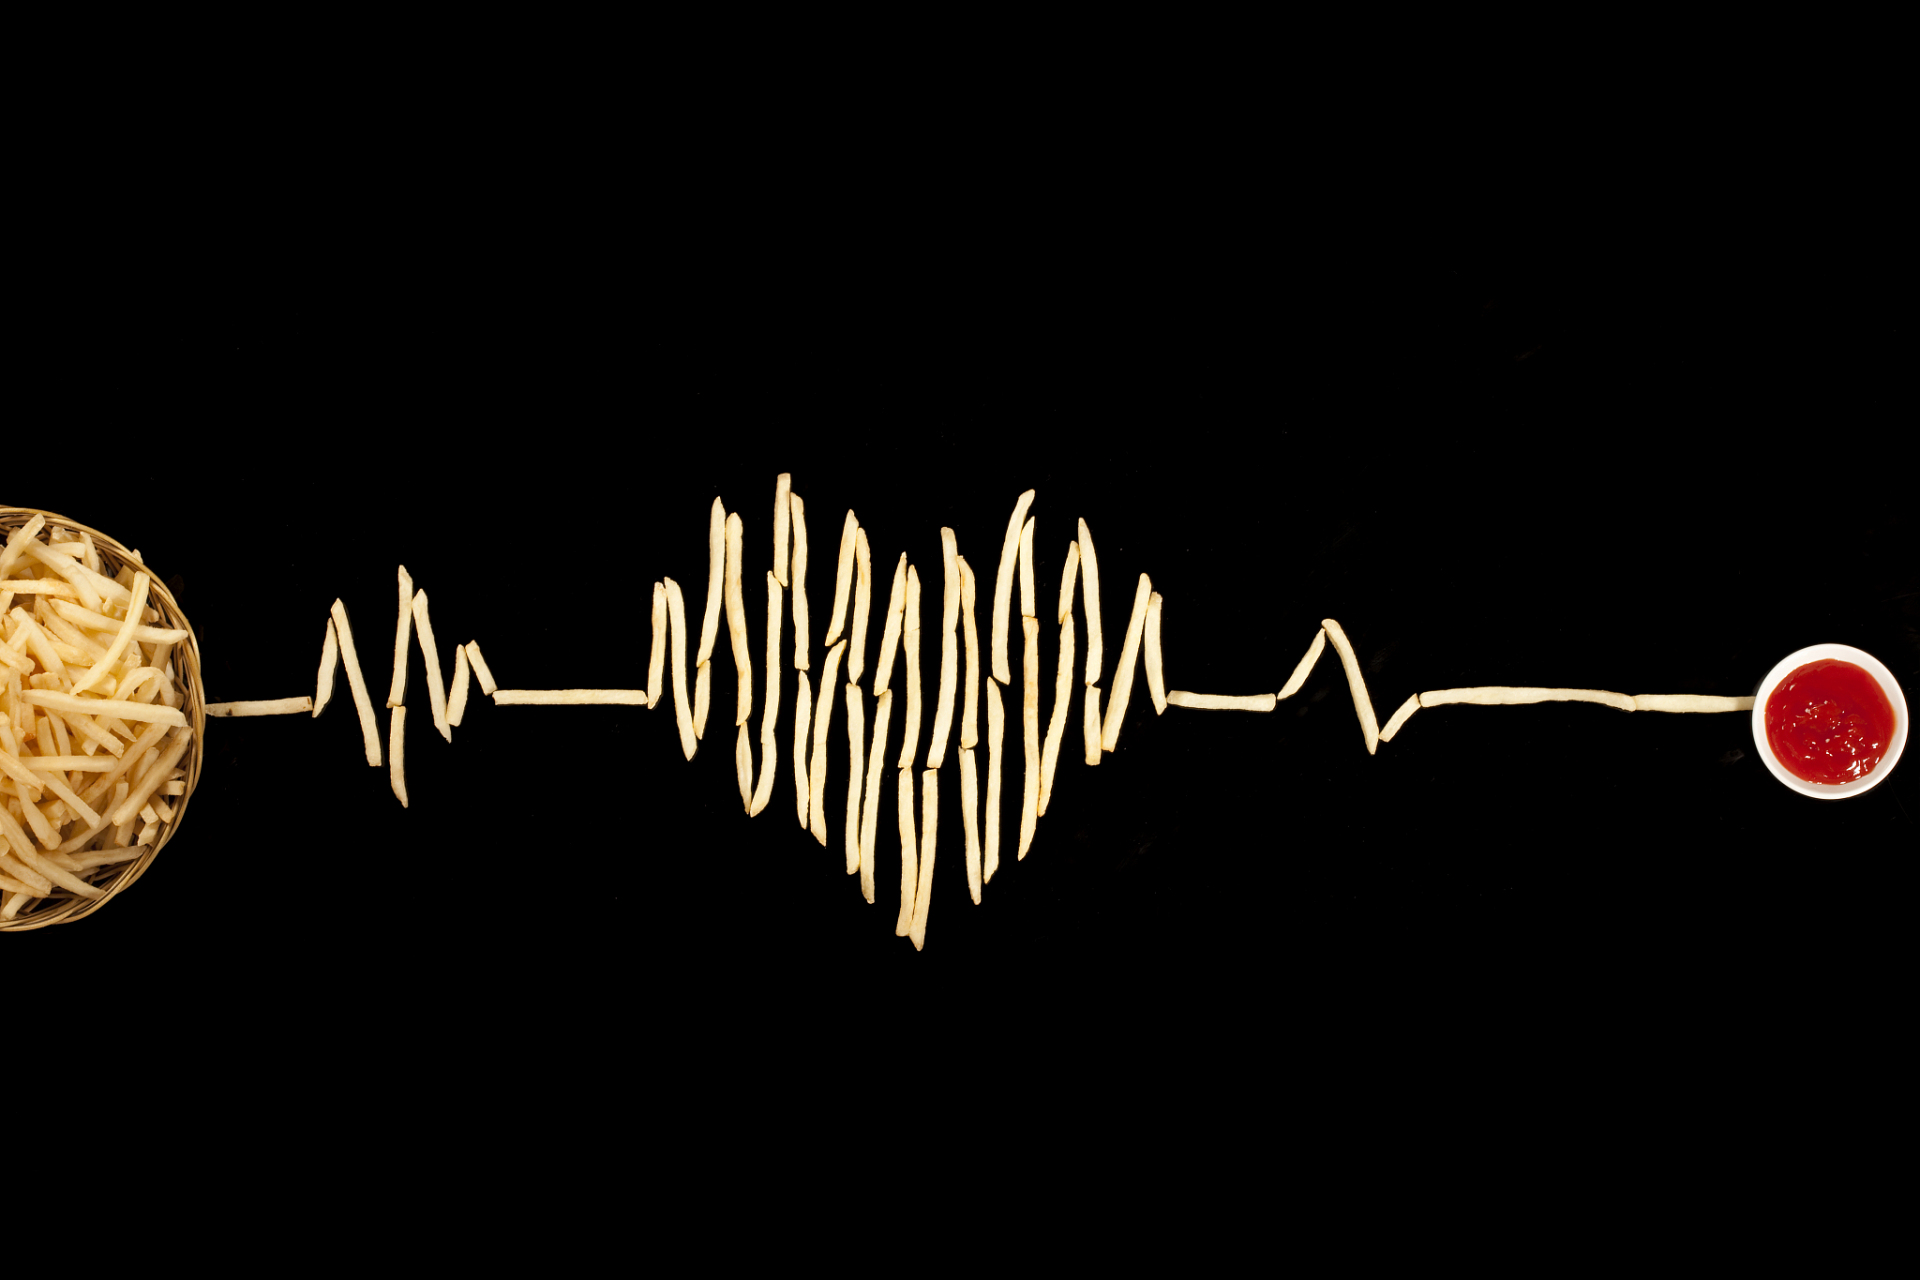 稳定型心绞痛心电图是怎样的  对于稳定型心绞痛患者在没有胸痛情况下